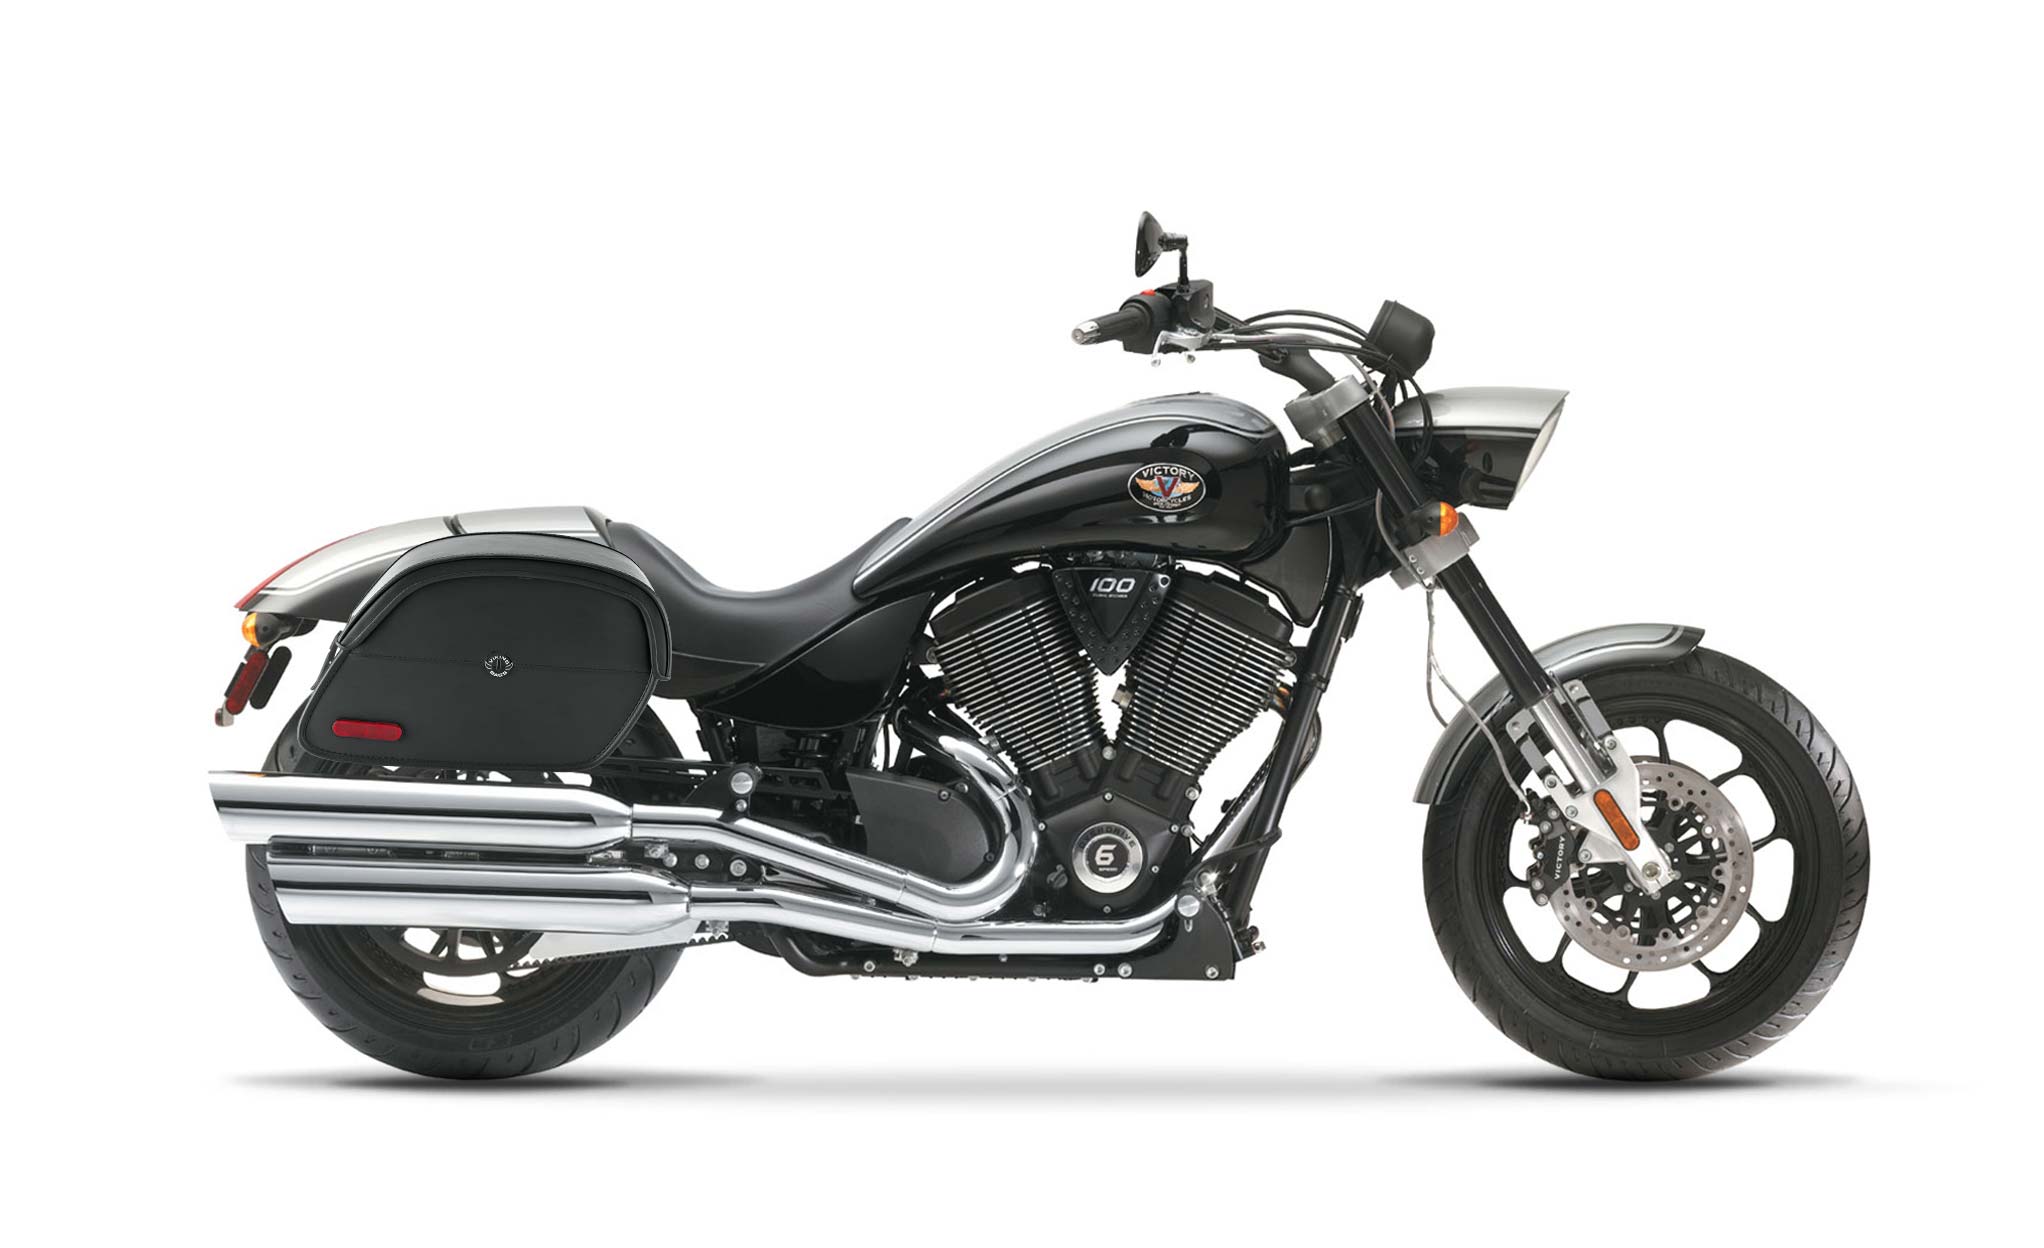 Viking California Large Victory Hammer Leather Motorcycle Saddlebags on Bike Photo @expand